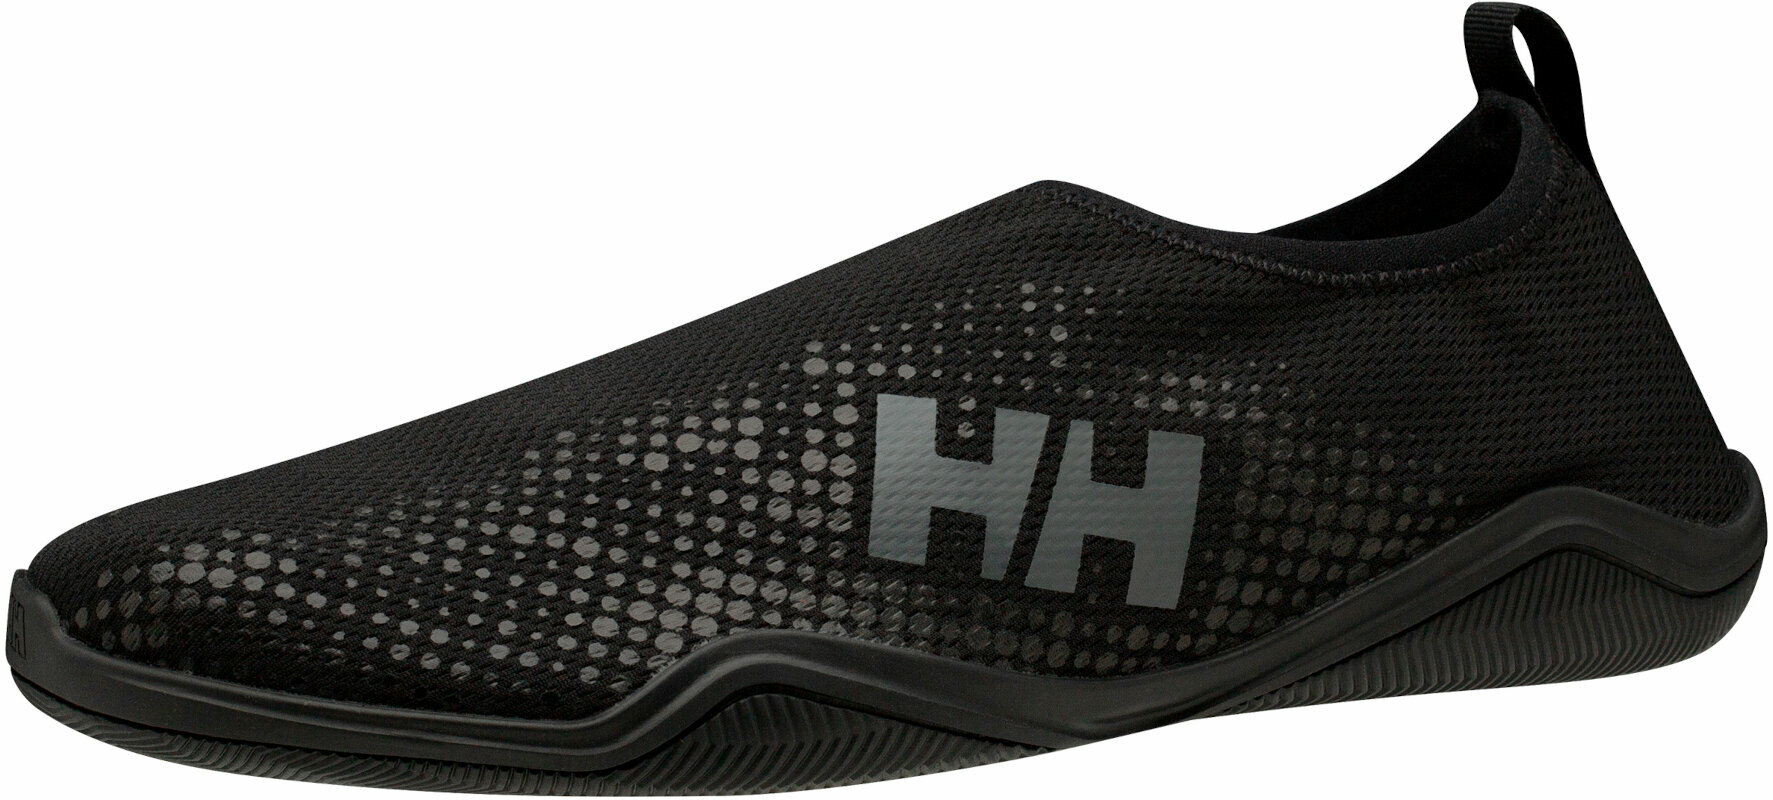 Chaussures de navigation Helly Hansen Men's Crest Watermoc Chaussures de navigation